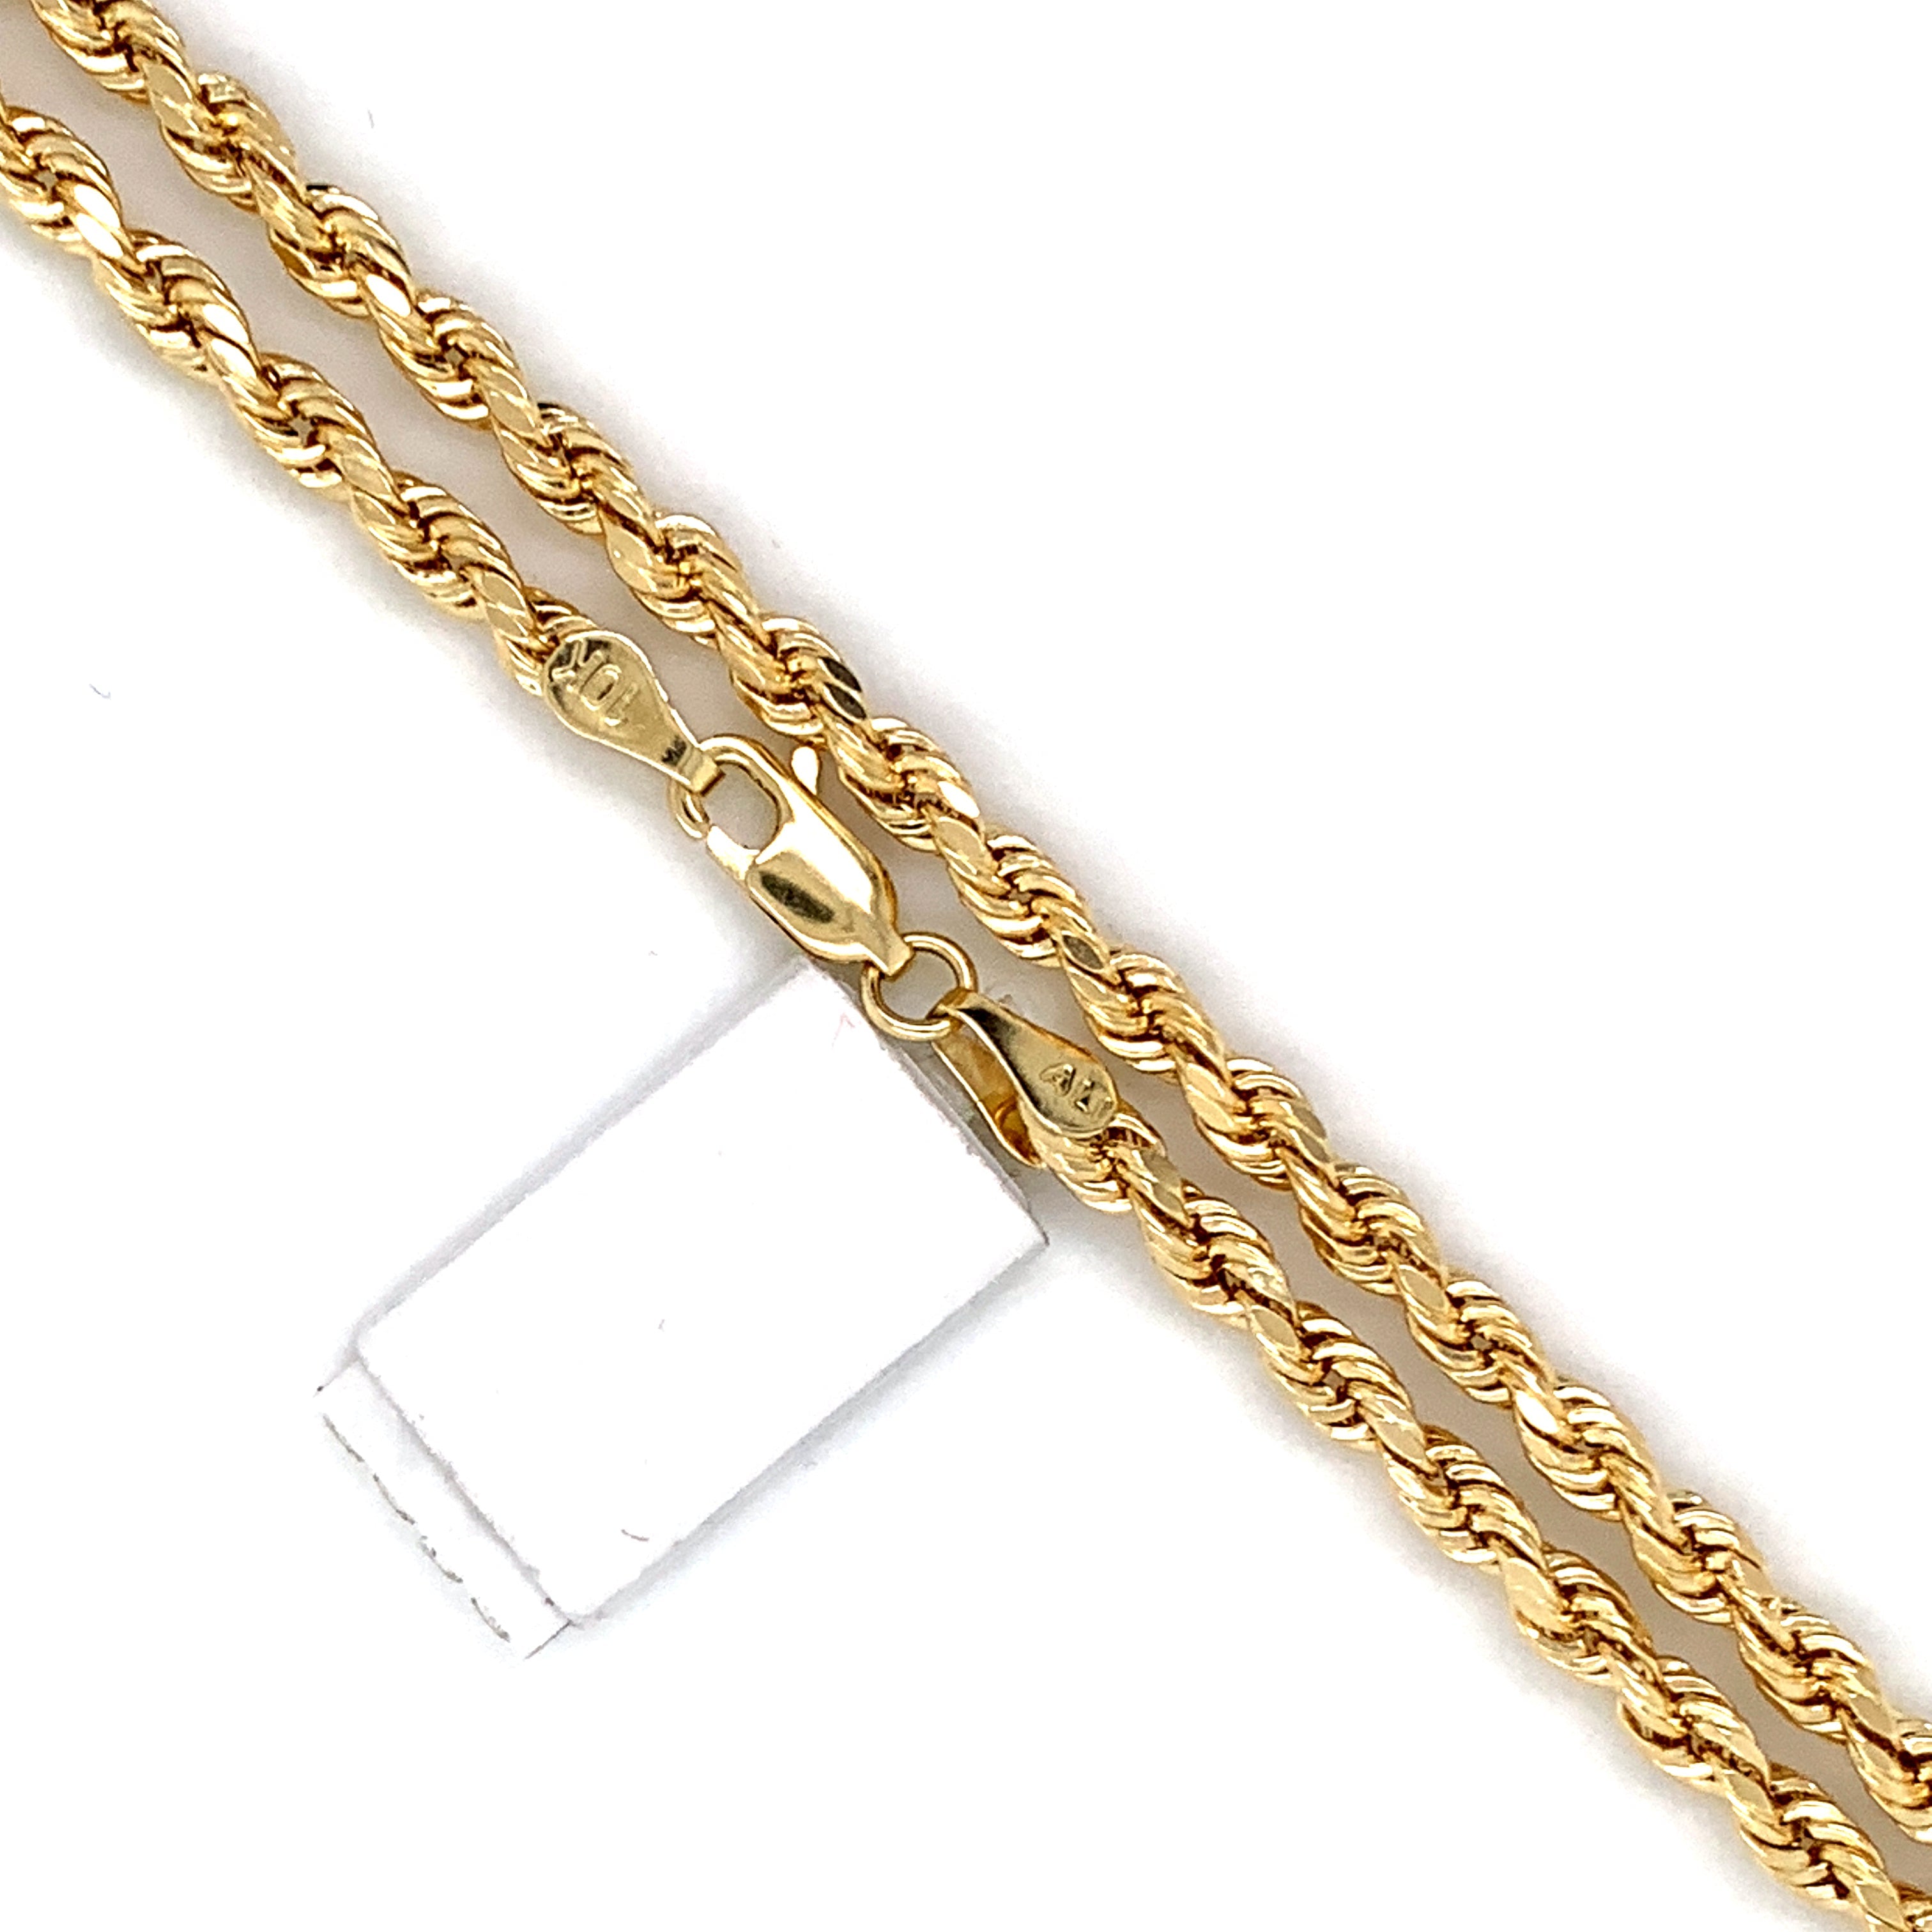 10K Gold Rope Chain (Regular)- 5mm - White Carat Diamonds 